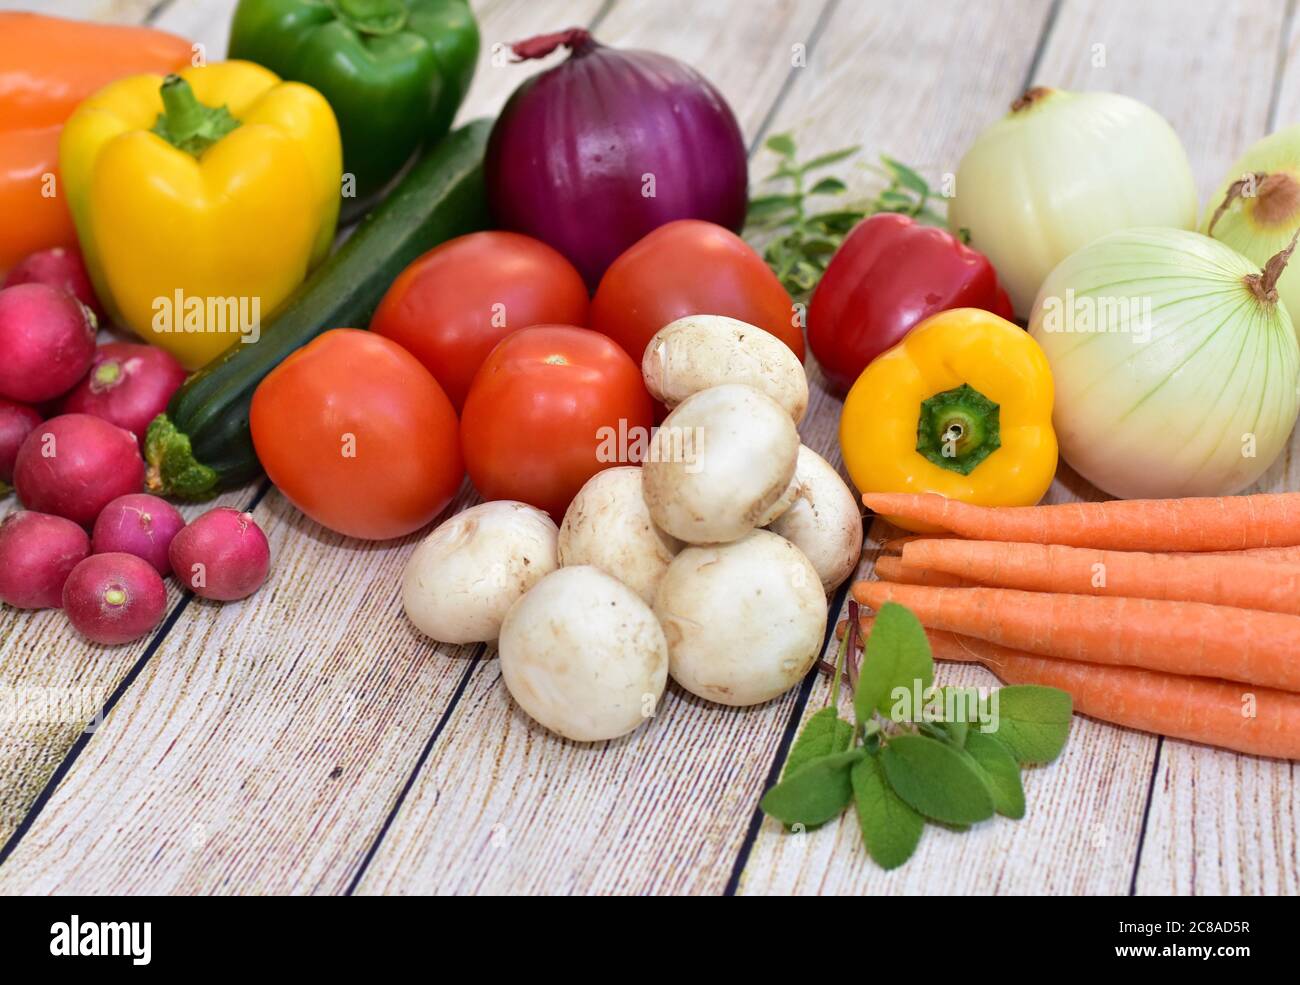 Frisches Bio geerntetes Gemüse und Blumen auf Holztisch in künstlerischer Anordnung angezeigt, um gesunde Mahlzeiten zu fördern Stockfoto